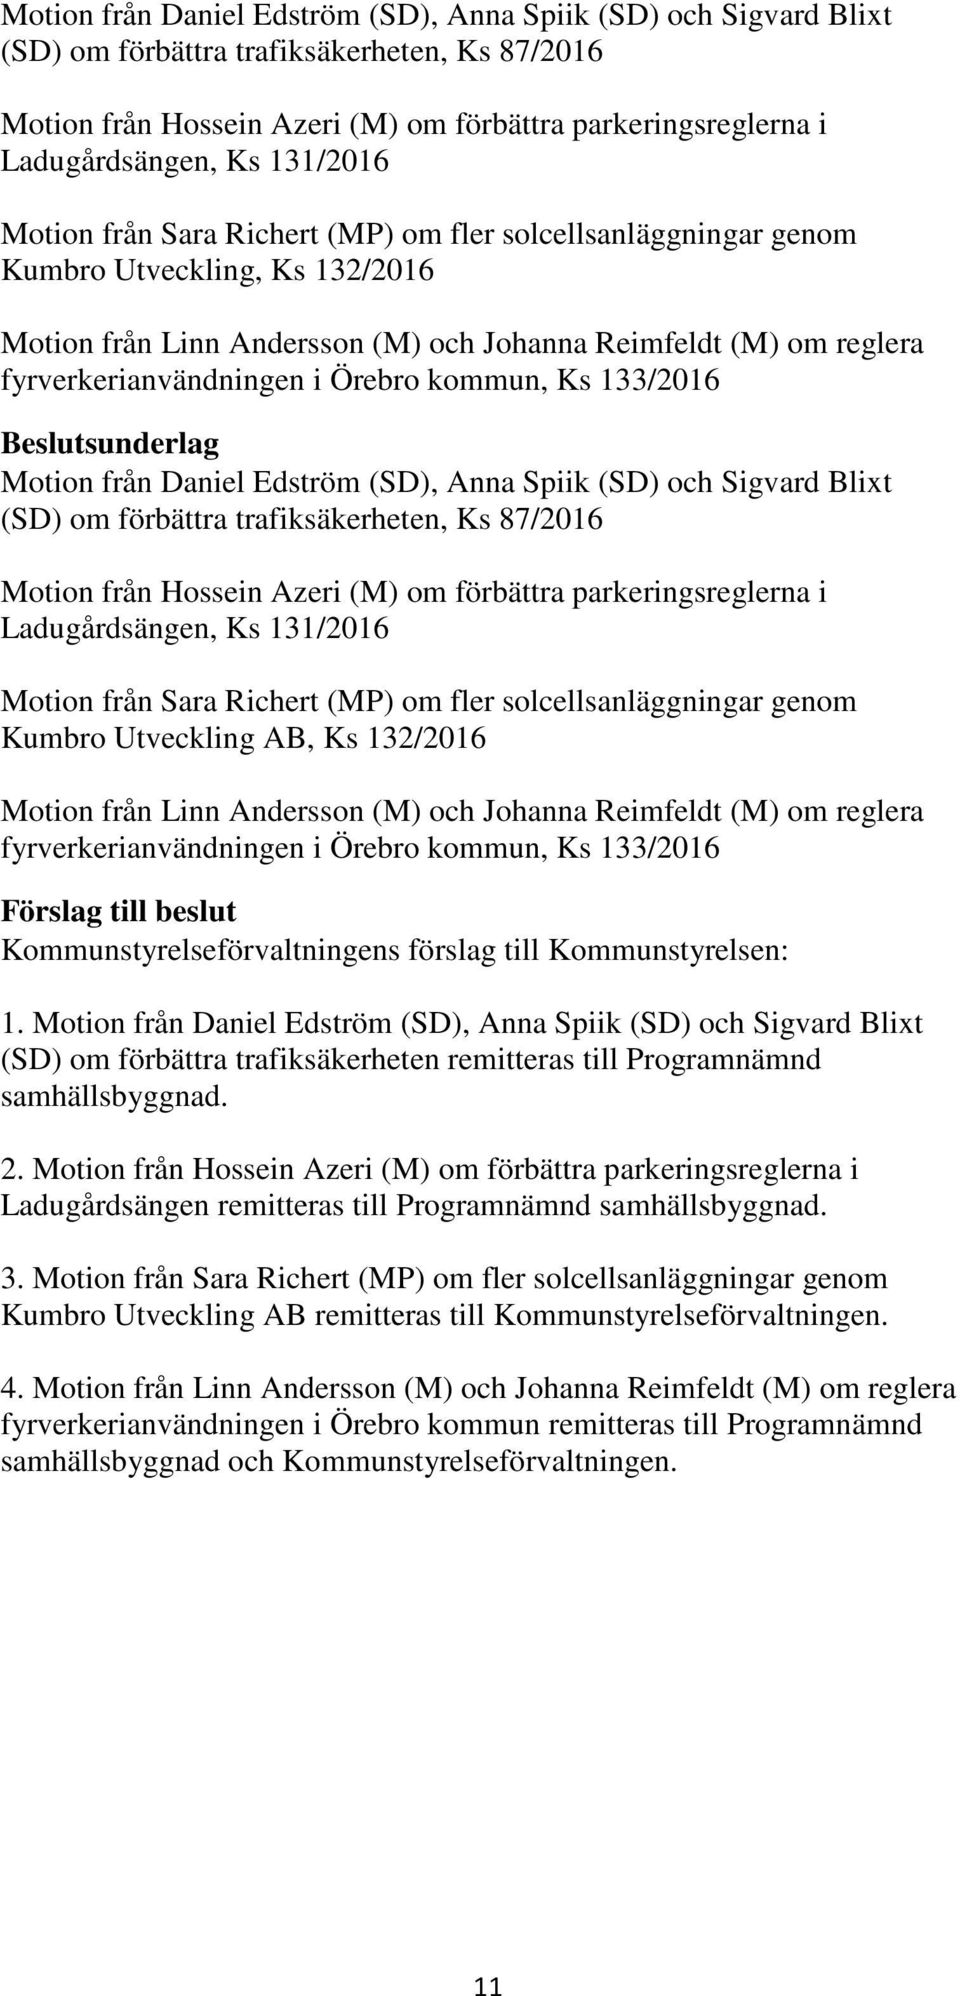 Örebro kommun, Ks 133/2016  131/2016 Motion från Sara Richert (MP) om fler solcellsanläggningar genom Kumbro Utveckling AB, Ks 132/2016 Motion från Linn Andersson (M) och Johanna Reimfeldt (M) om